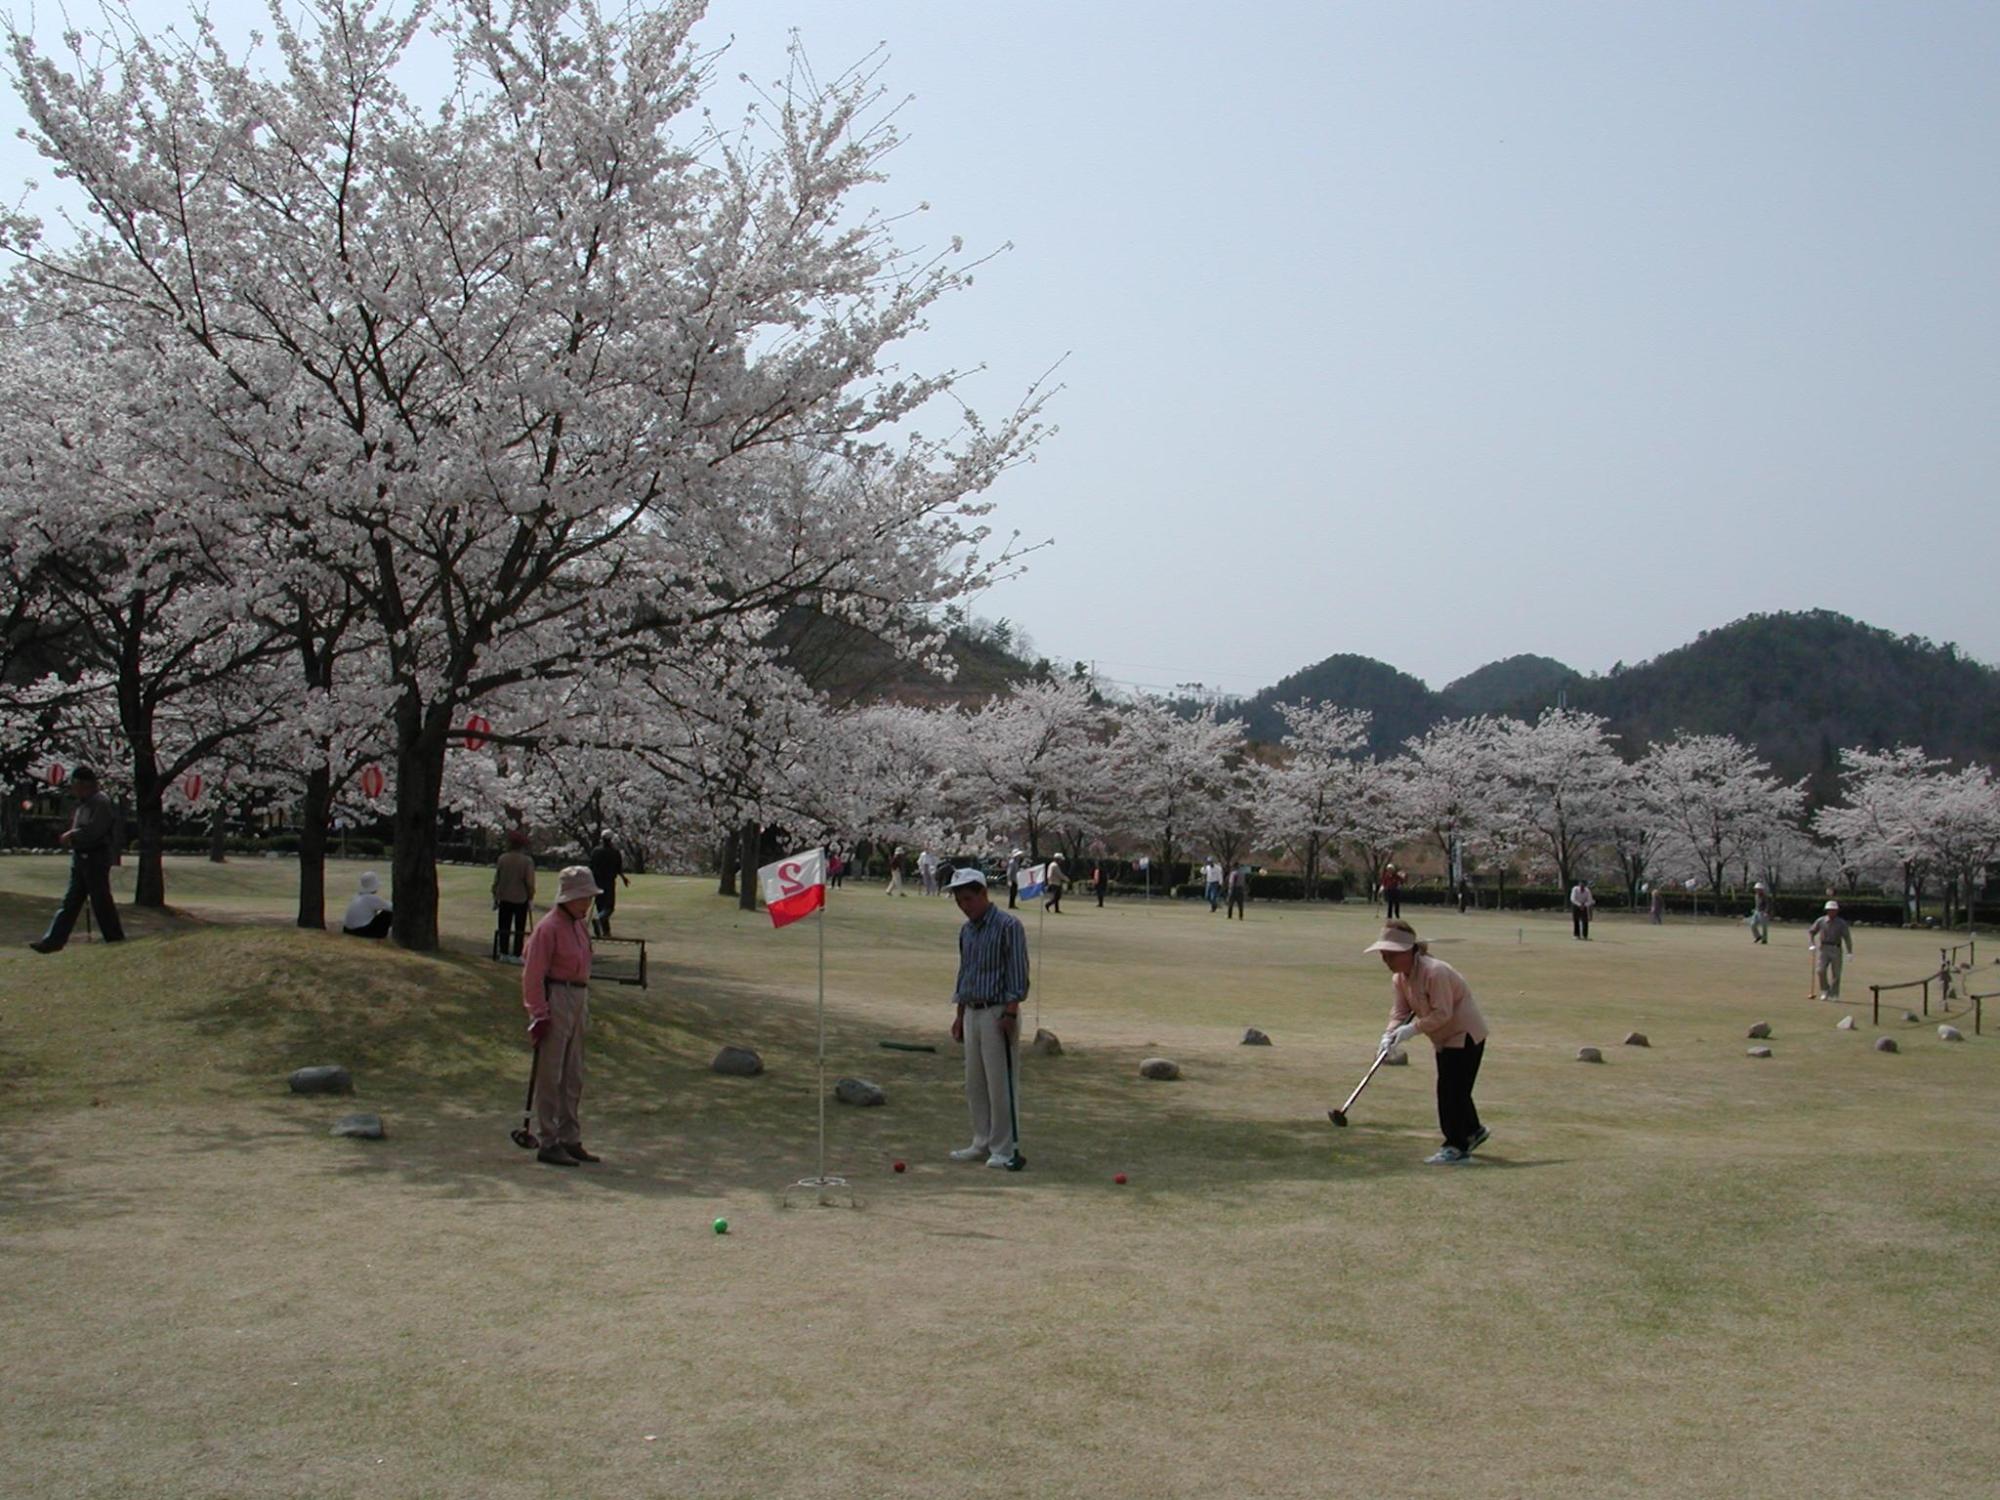 桜の花が満開の木の傍でグラウンドゴルフをプレーする2人の男性と1人の女性の写真